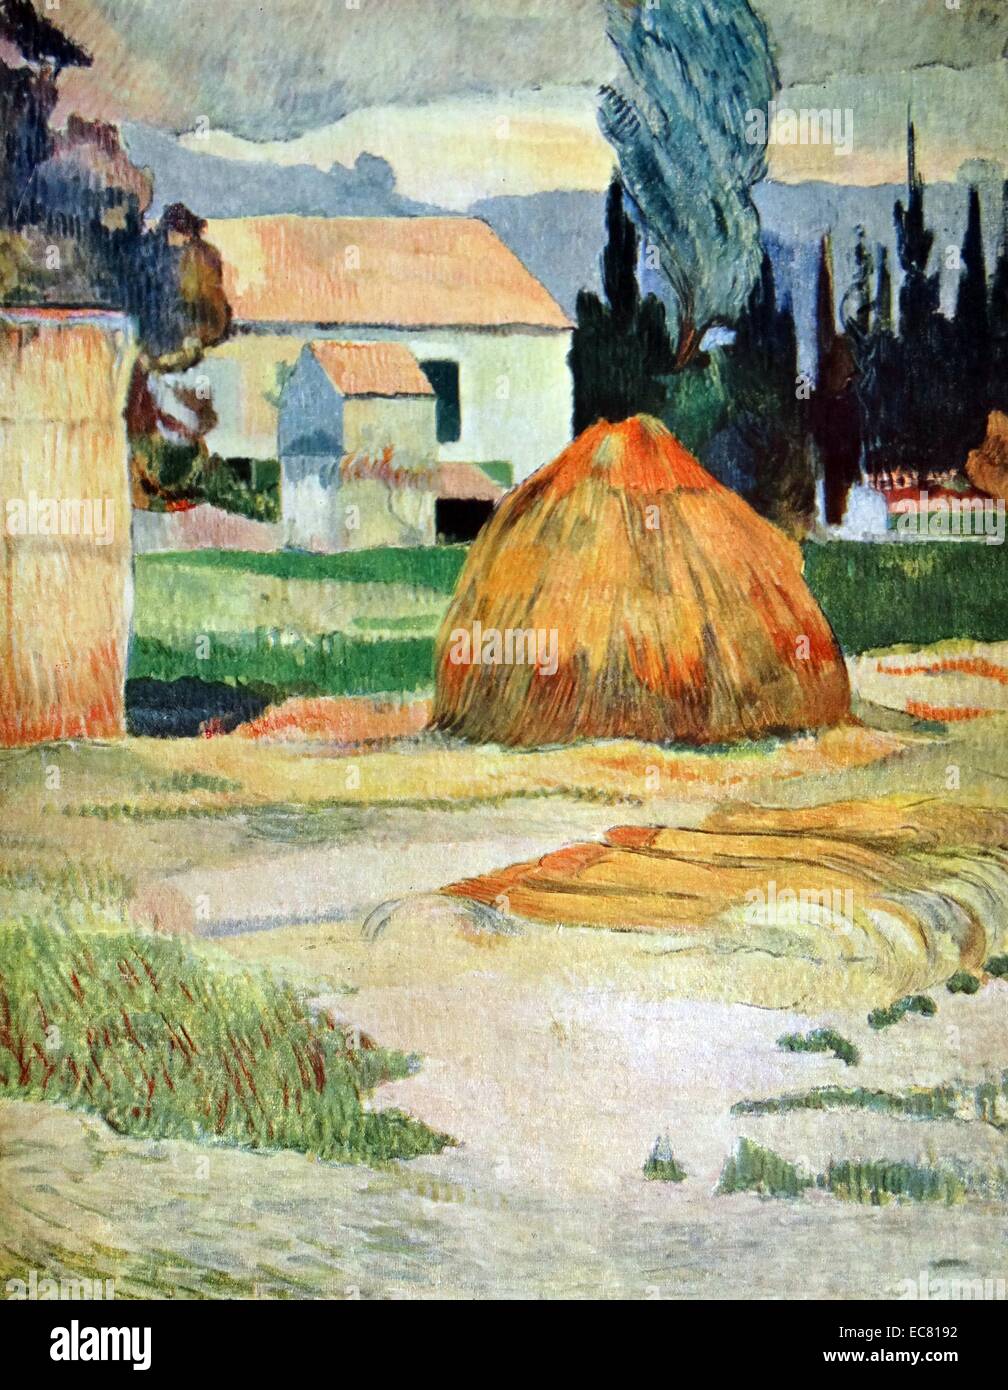 Paysage près d'Arles est une huile sur toile de 1888 du peintre français Paul Gauguin, situé dans l'Indianapolis Museum of Art, qui est à Indianapolis, Indiana. Il dépeint une scène rurale en Provence Banque D'Images